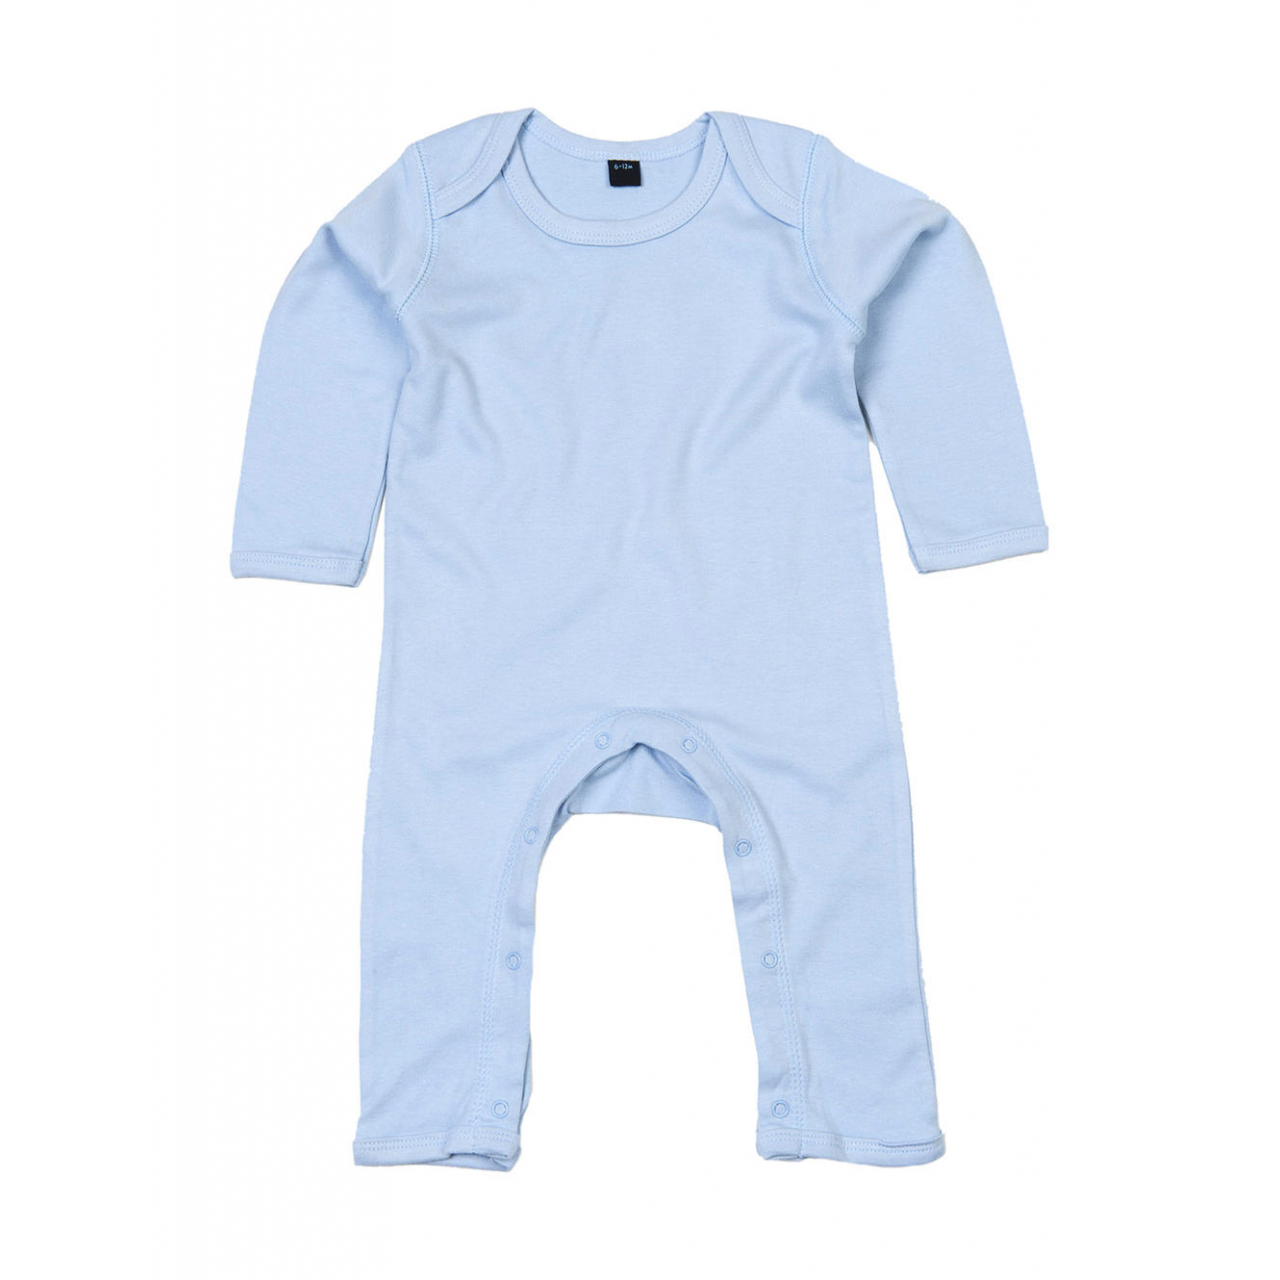 Dětské pyžamo Babybugz - světle modré, 3-6 měsíců